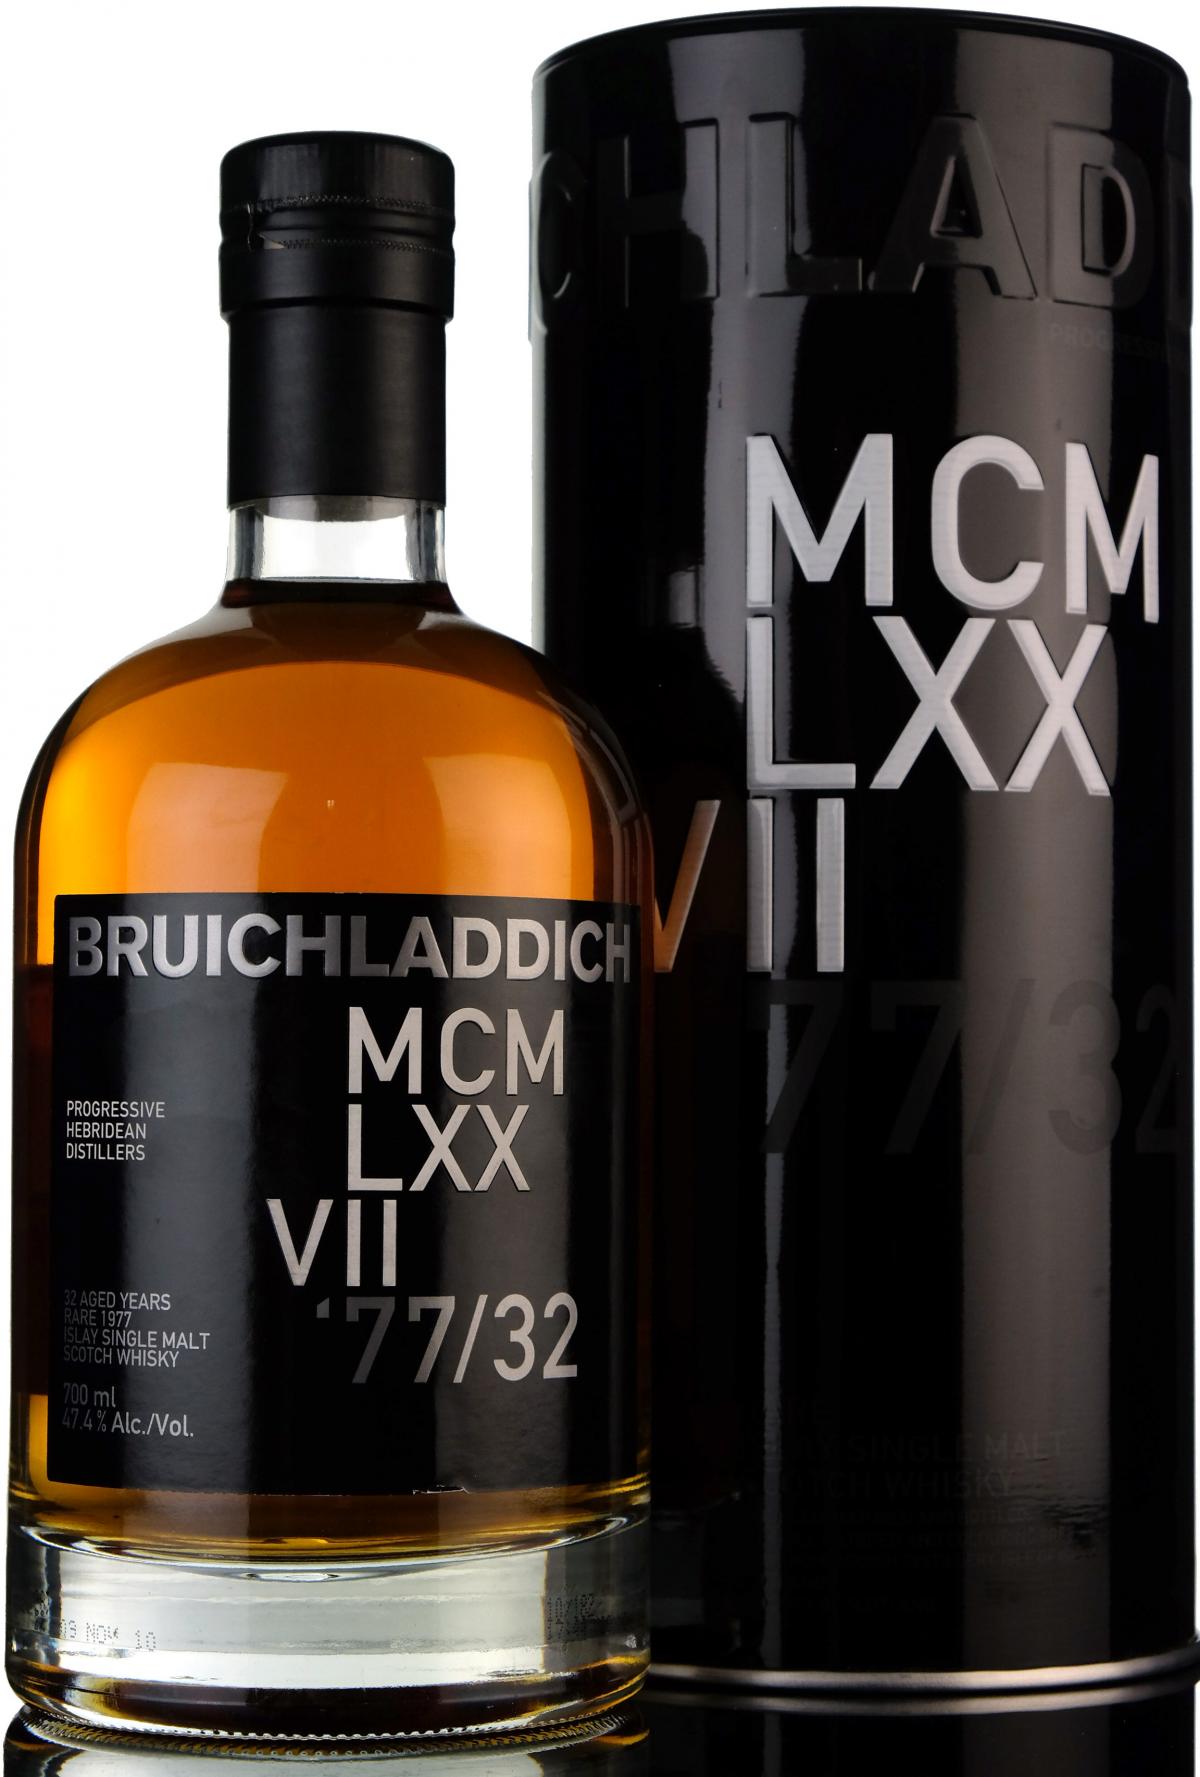 Bruichladdich MCM LXX VII 1977 - 32 Year Old